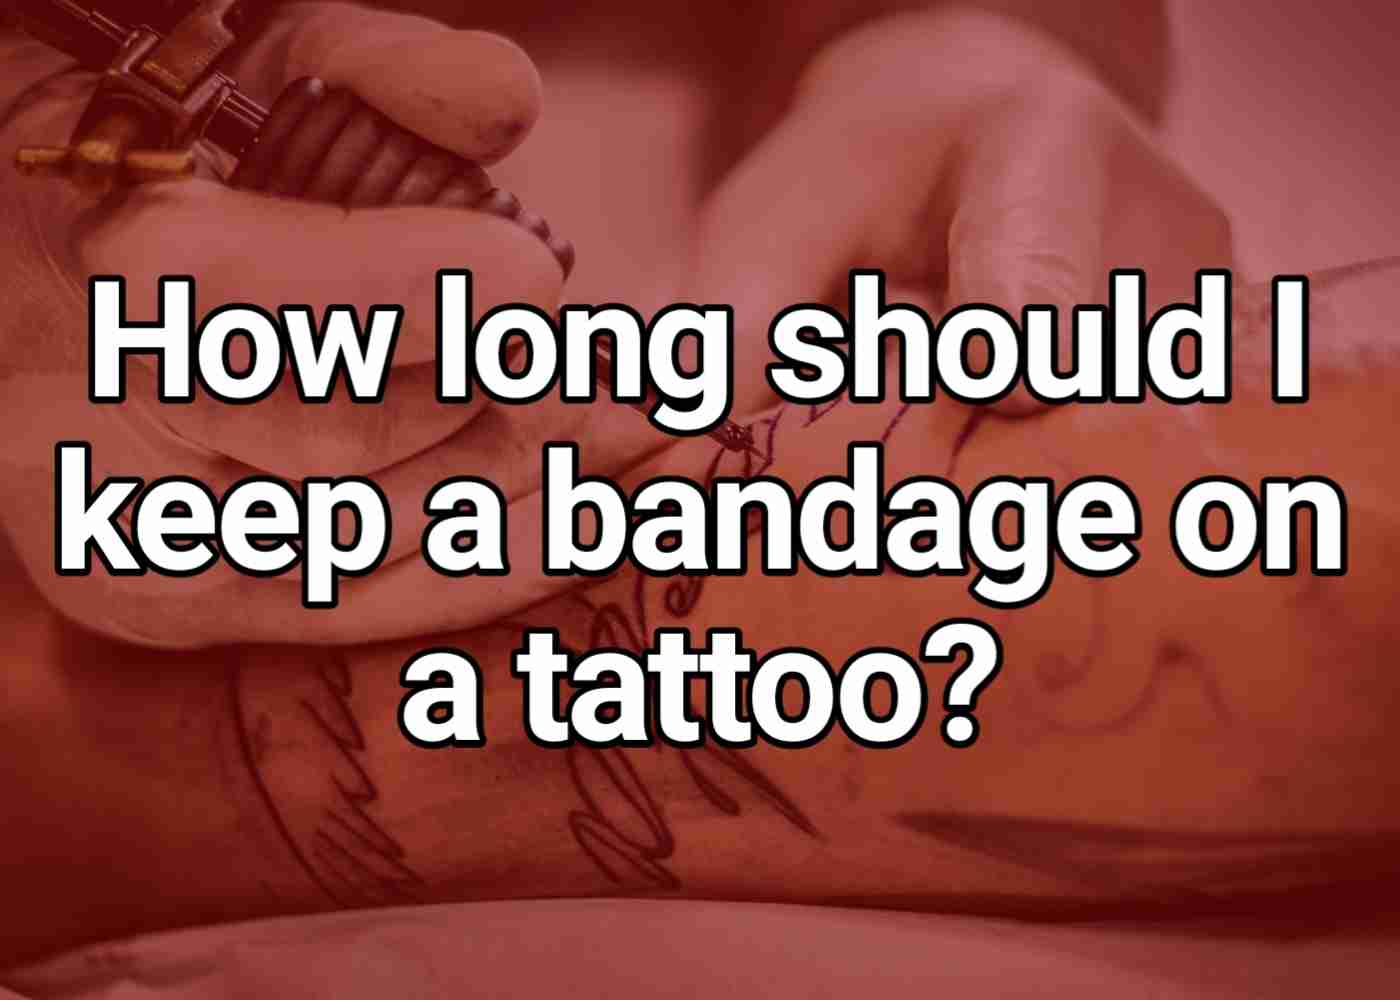 How long should I keep a bandage on a tattoo